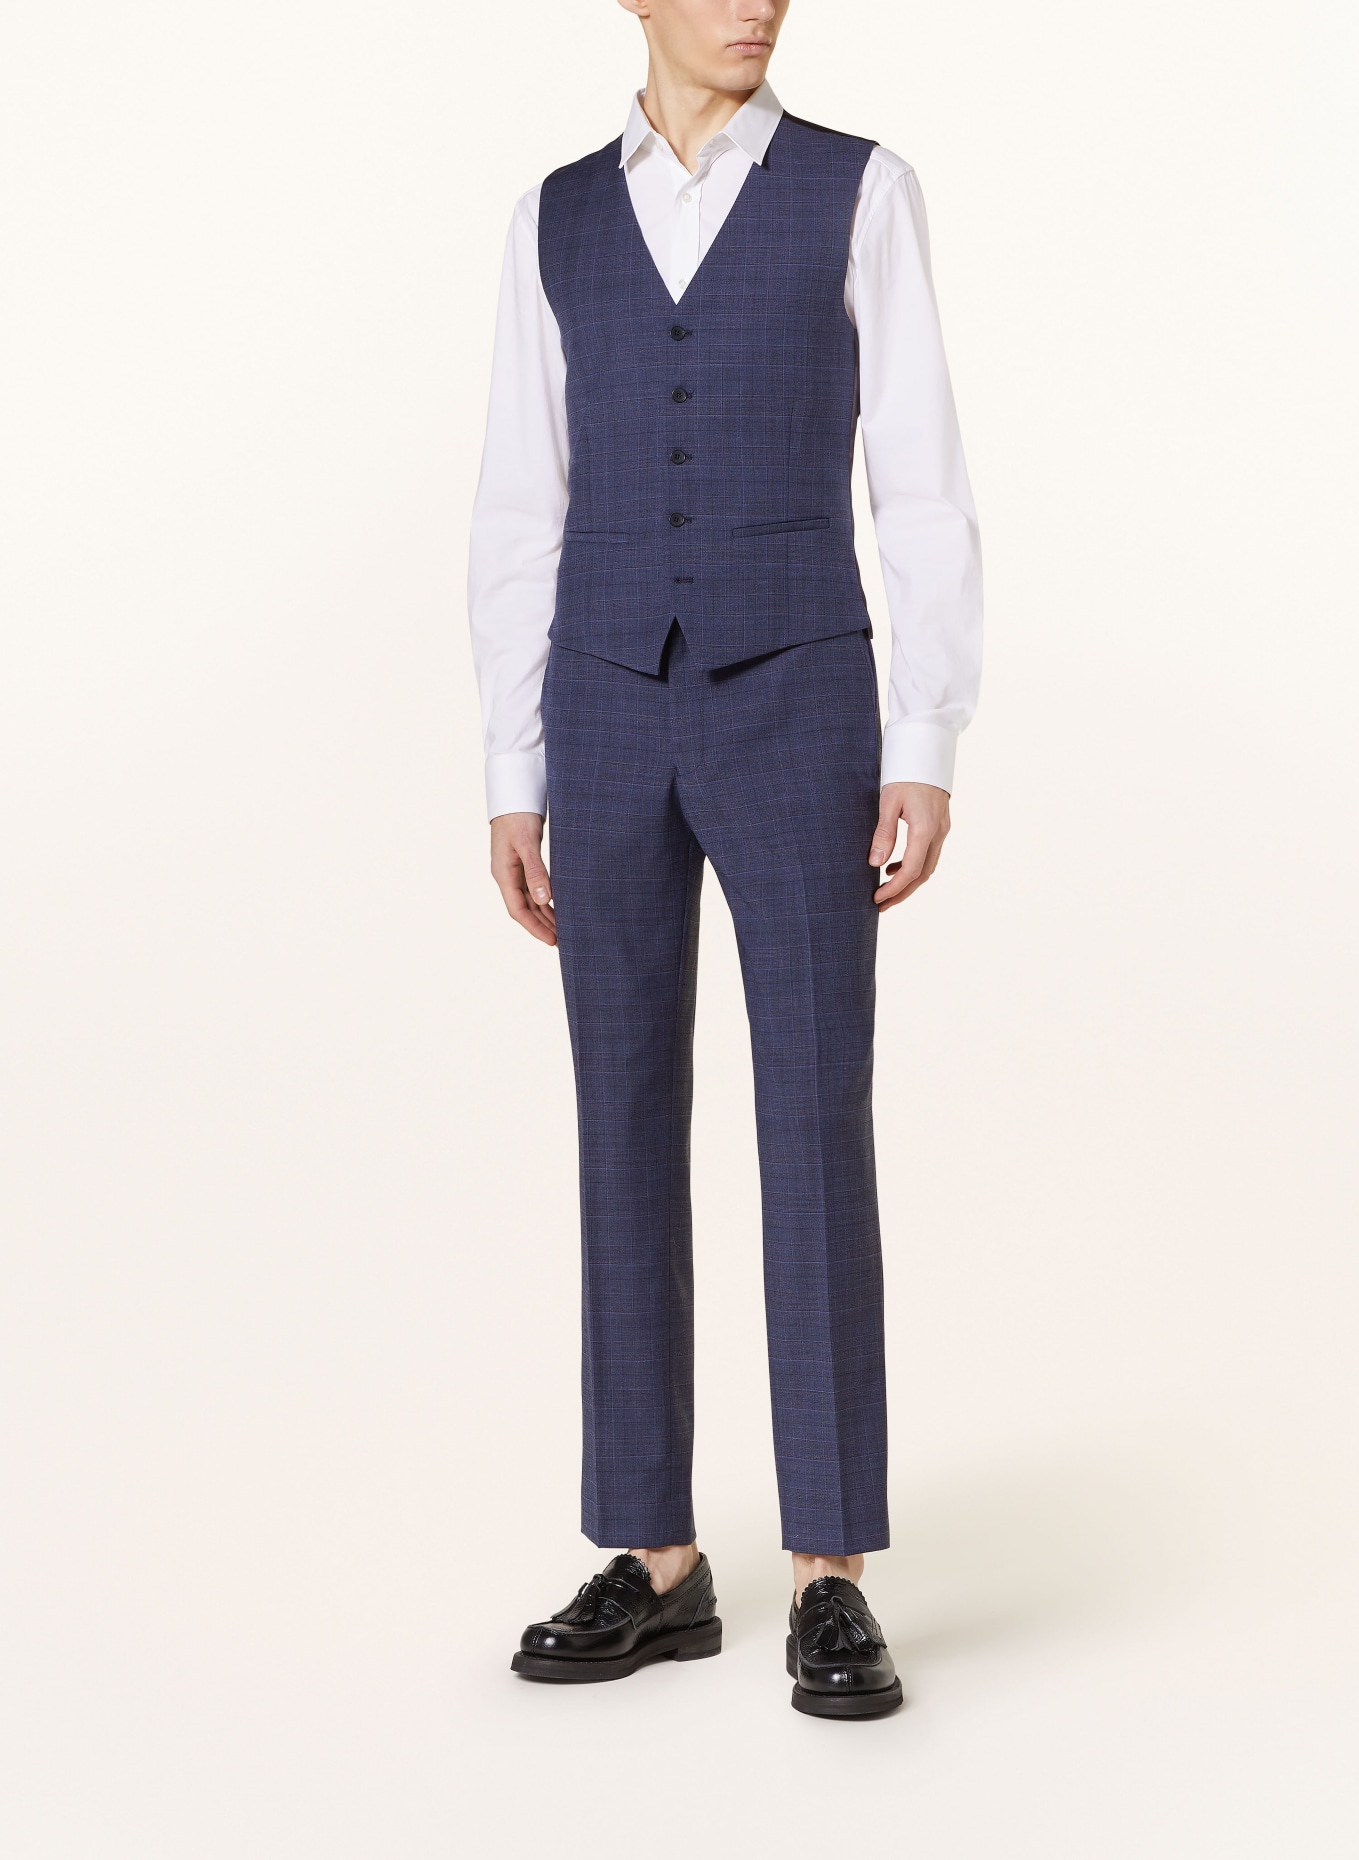 TED BAKER Suit vest CHELARJ regular fit, Color: NAVY NAVY (Image 2)